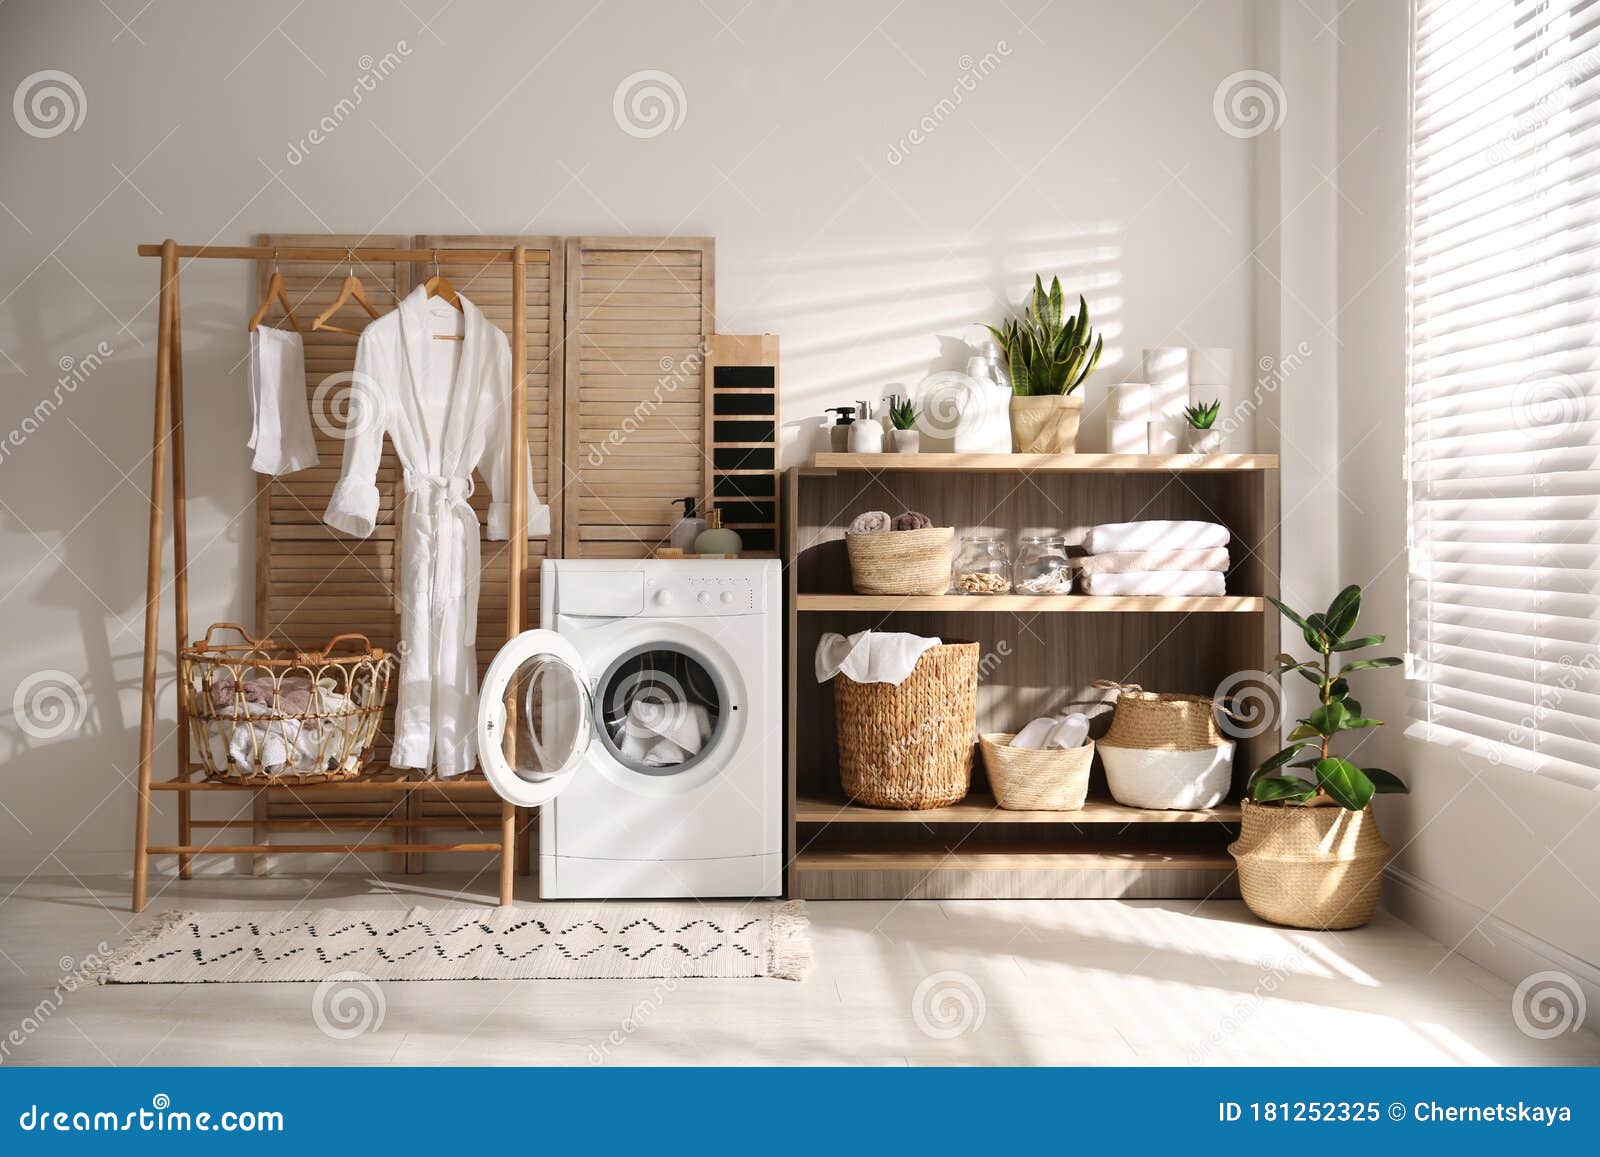 https://thumbs.dreamstime.com/z/lavadora-moderna-y-estantes-en-la-sala-de-lavander%C3%ADa-el-interior-181252325.jpg